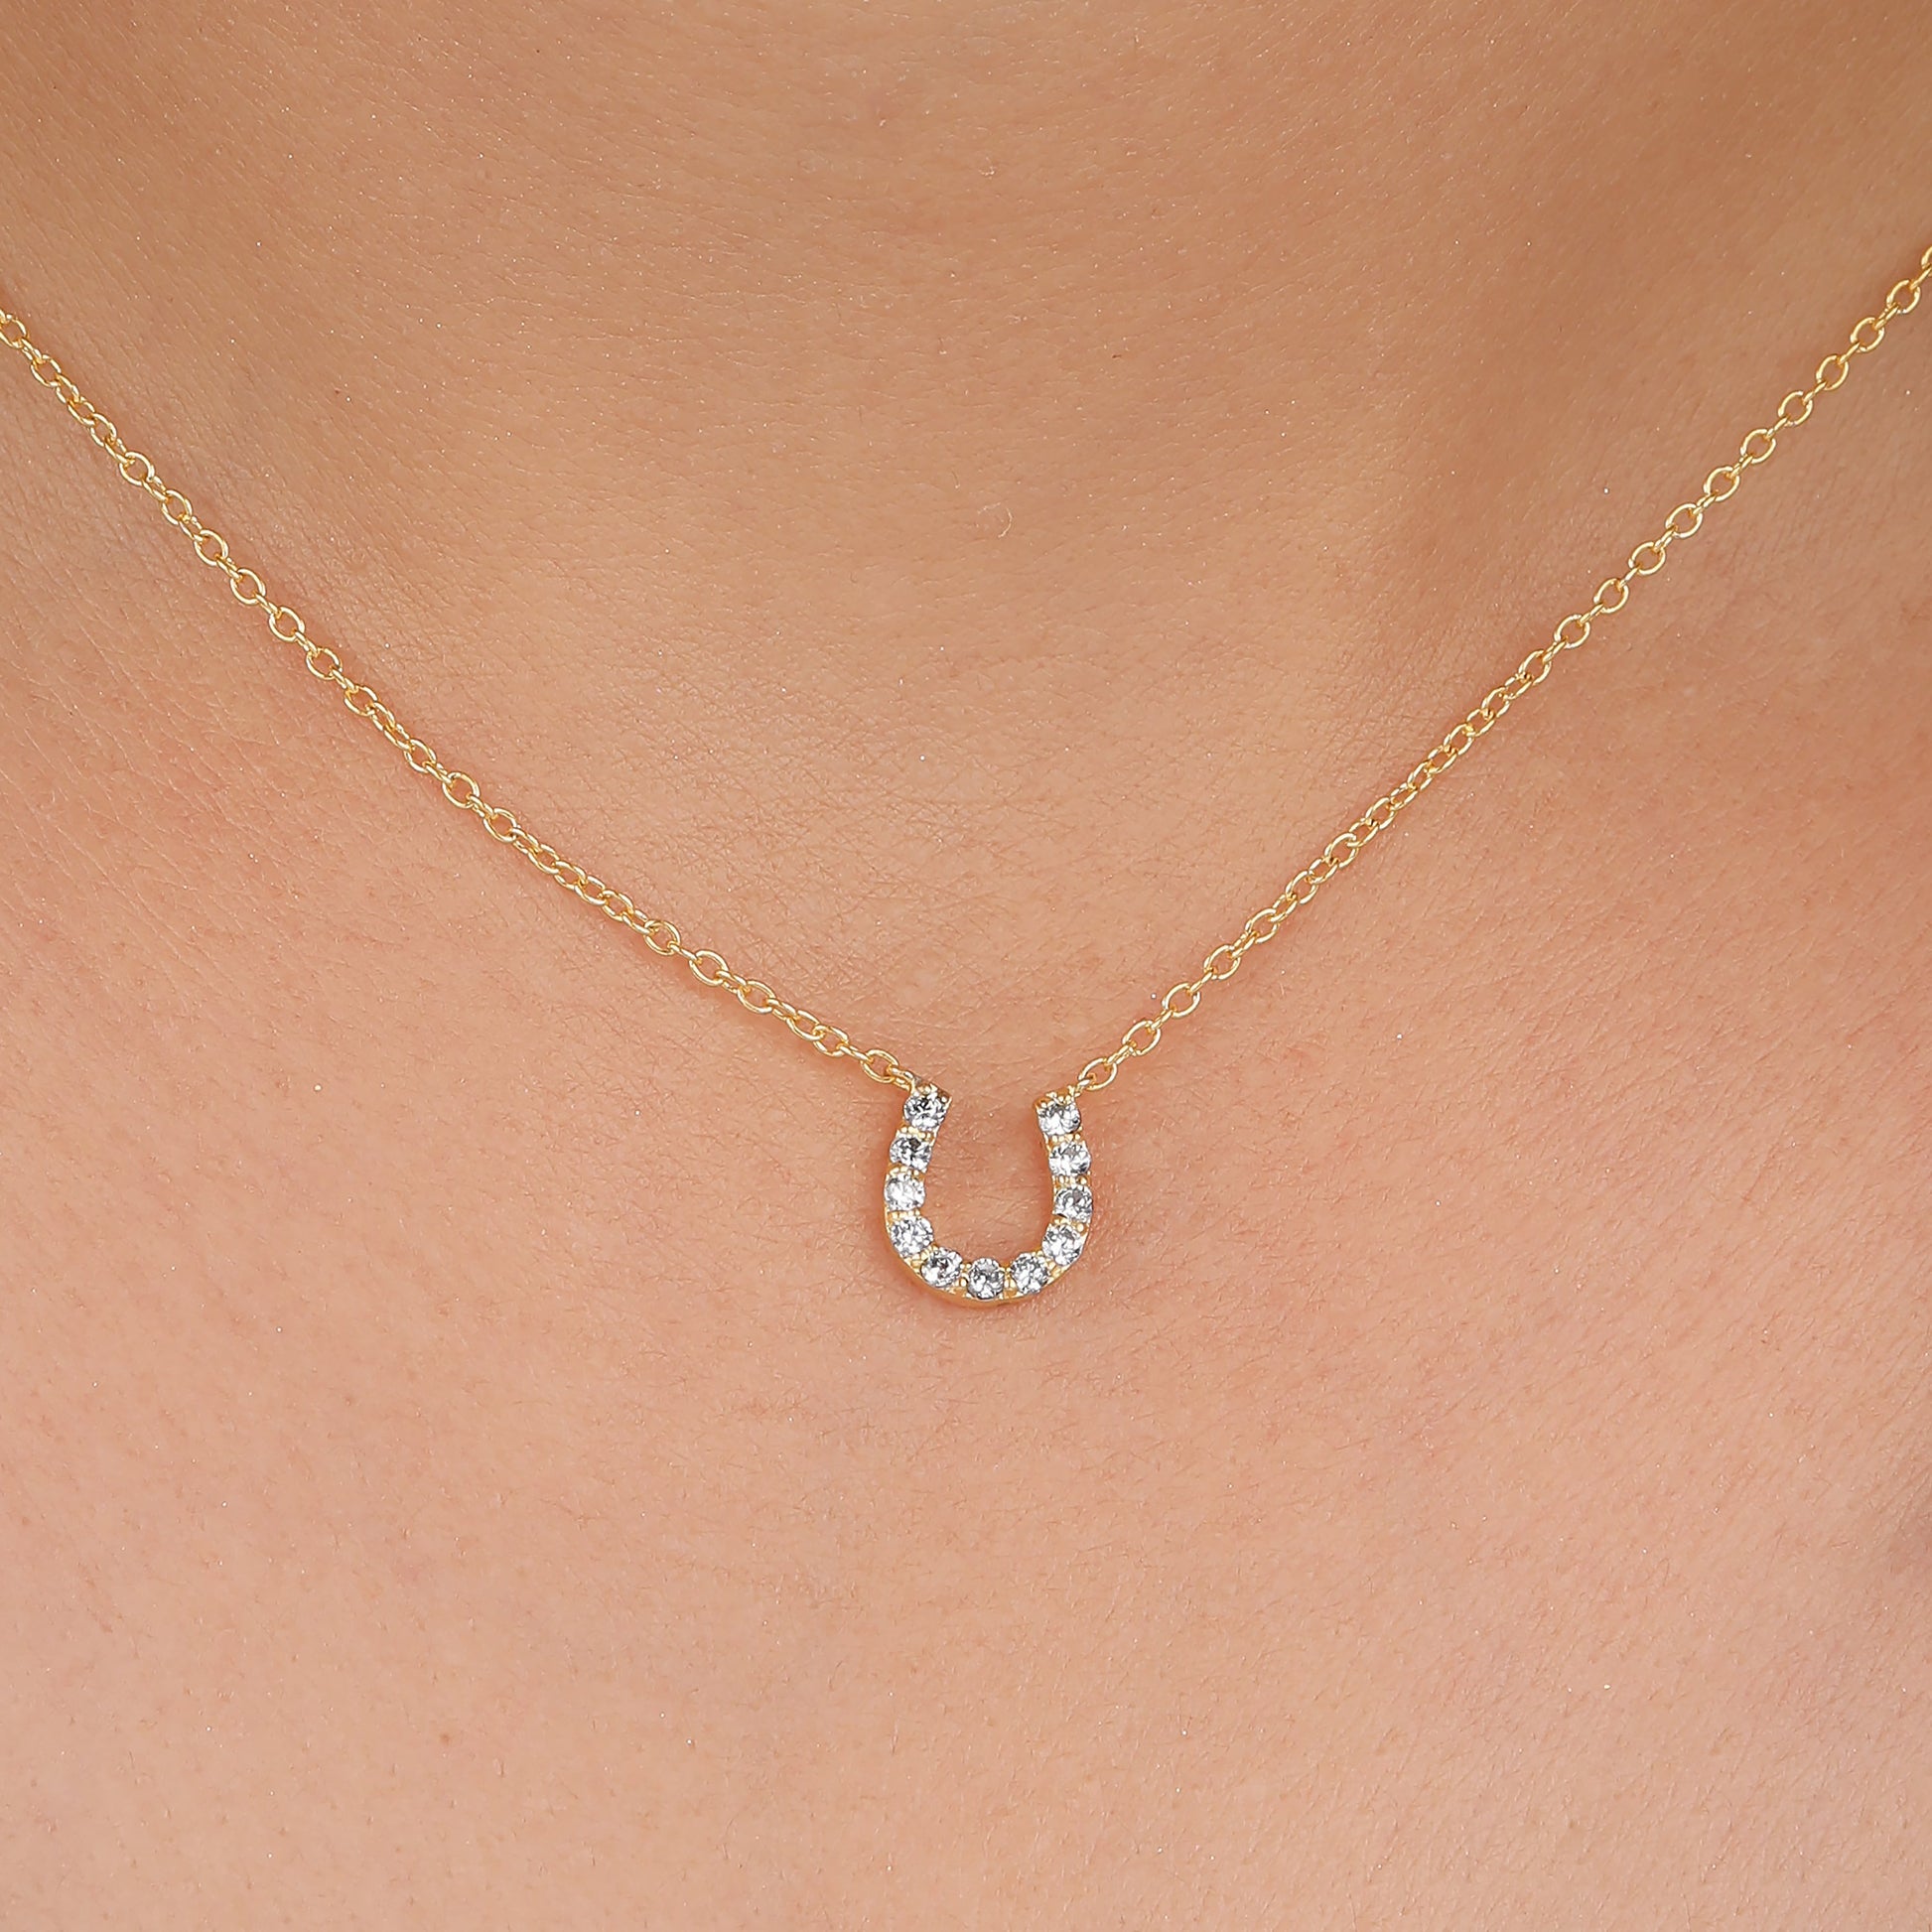 horseshoe necklace white gold